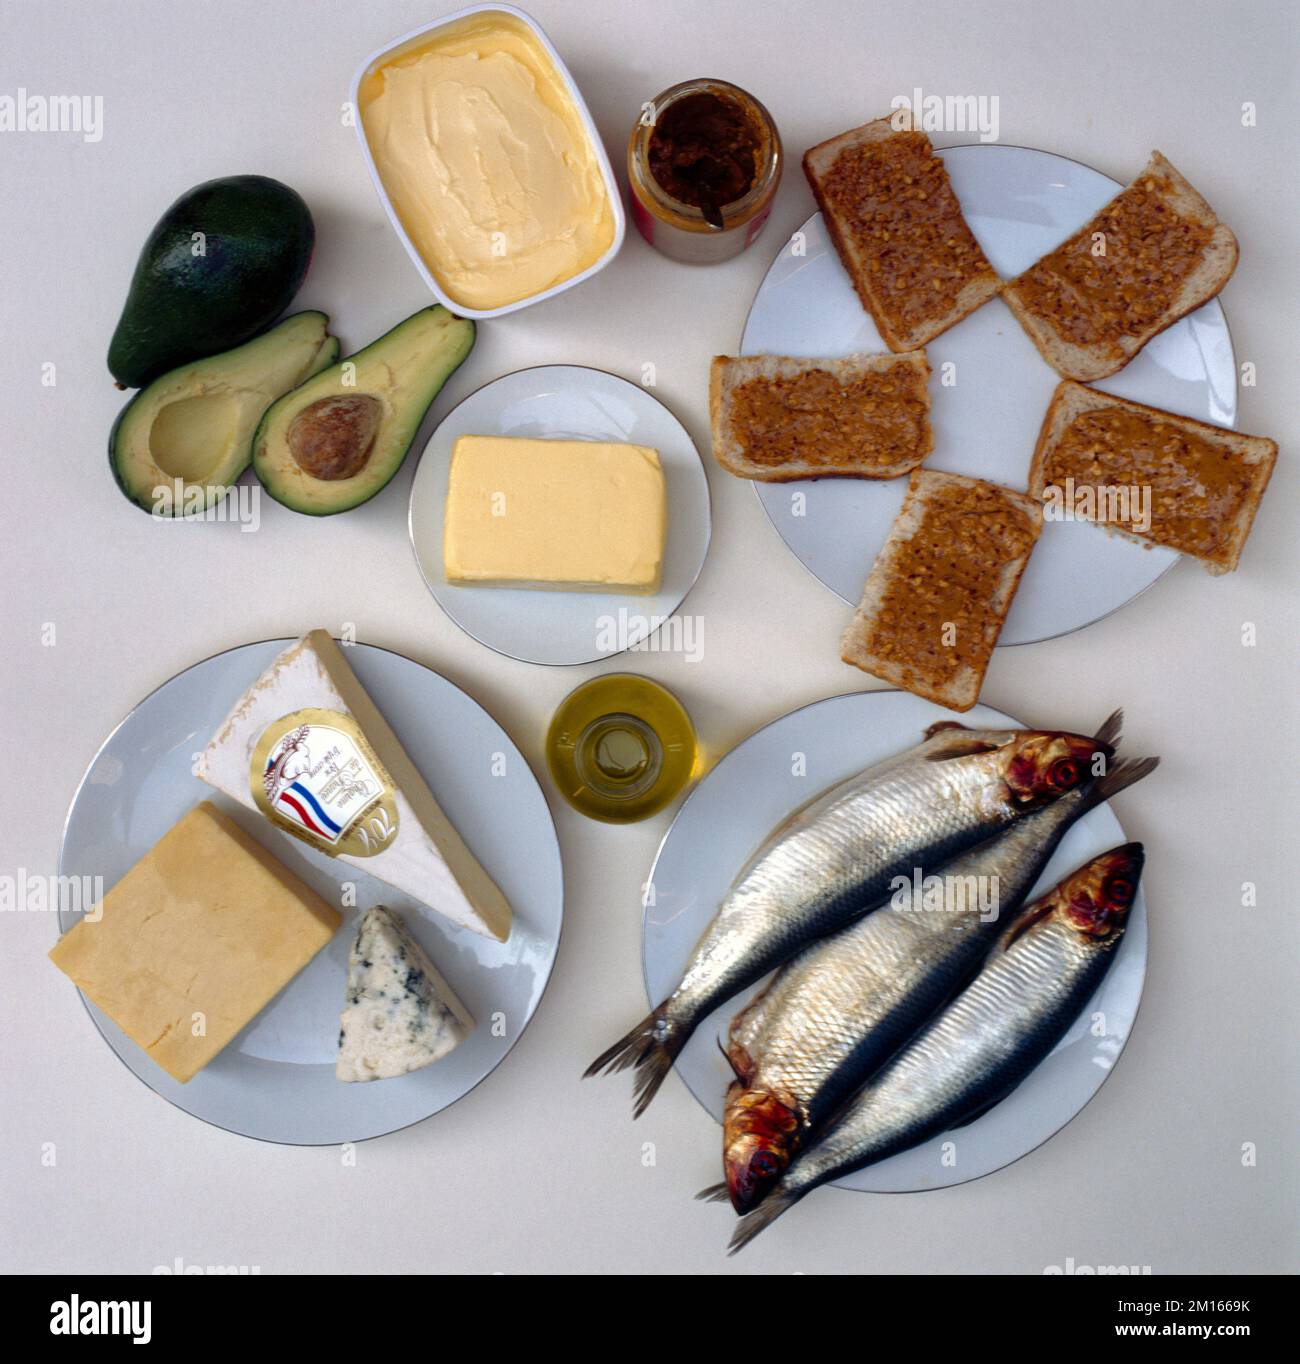 Fette und Öle - Margarine, Butter, Käse, Erdnussbutter auf Toast, Olivenöl, Fisch und Advocados Stockfoto